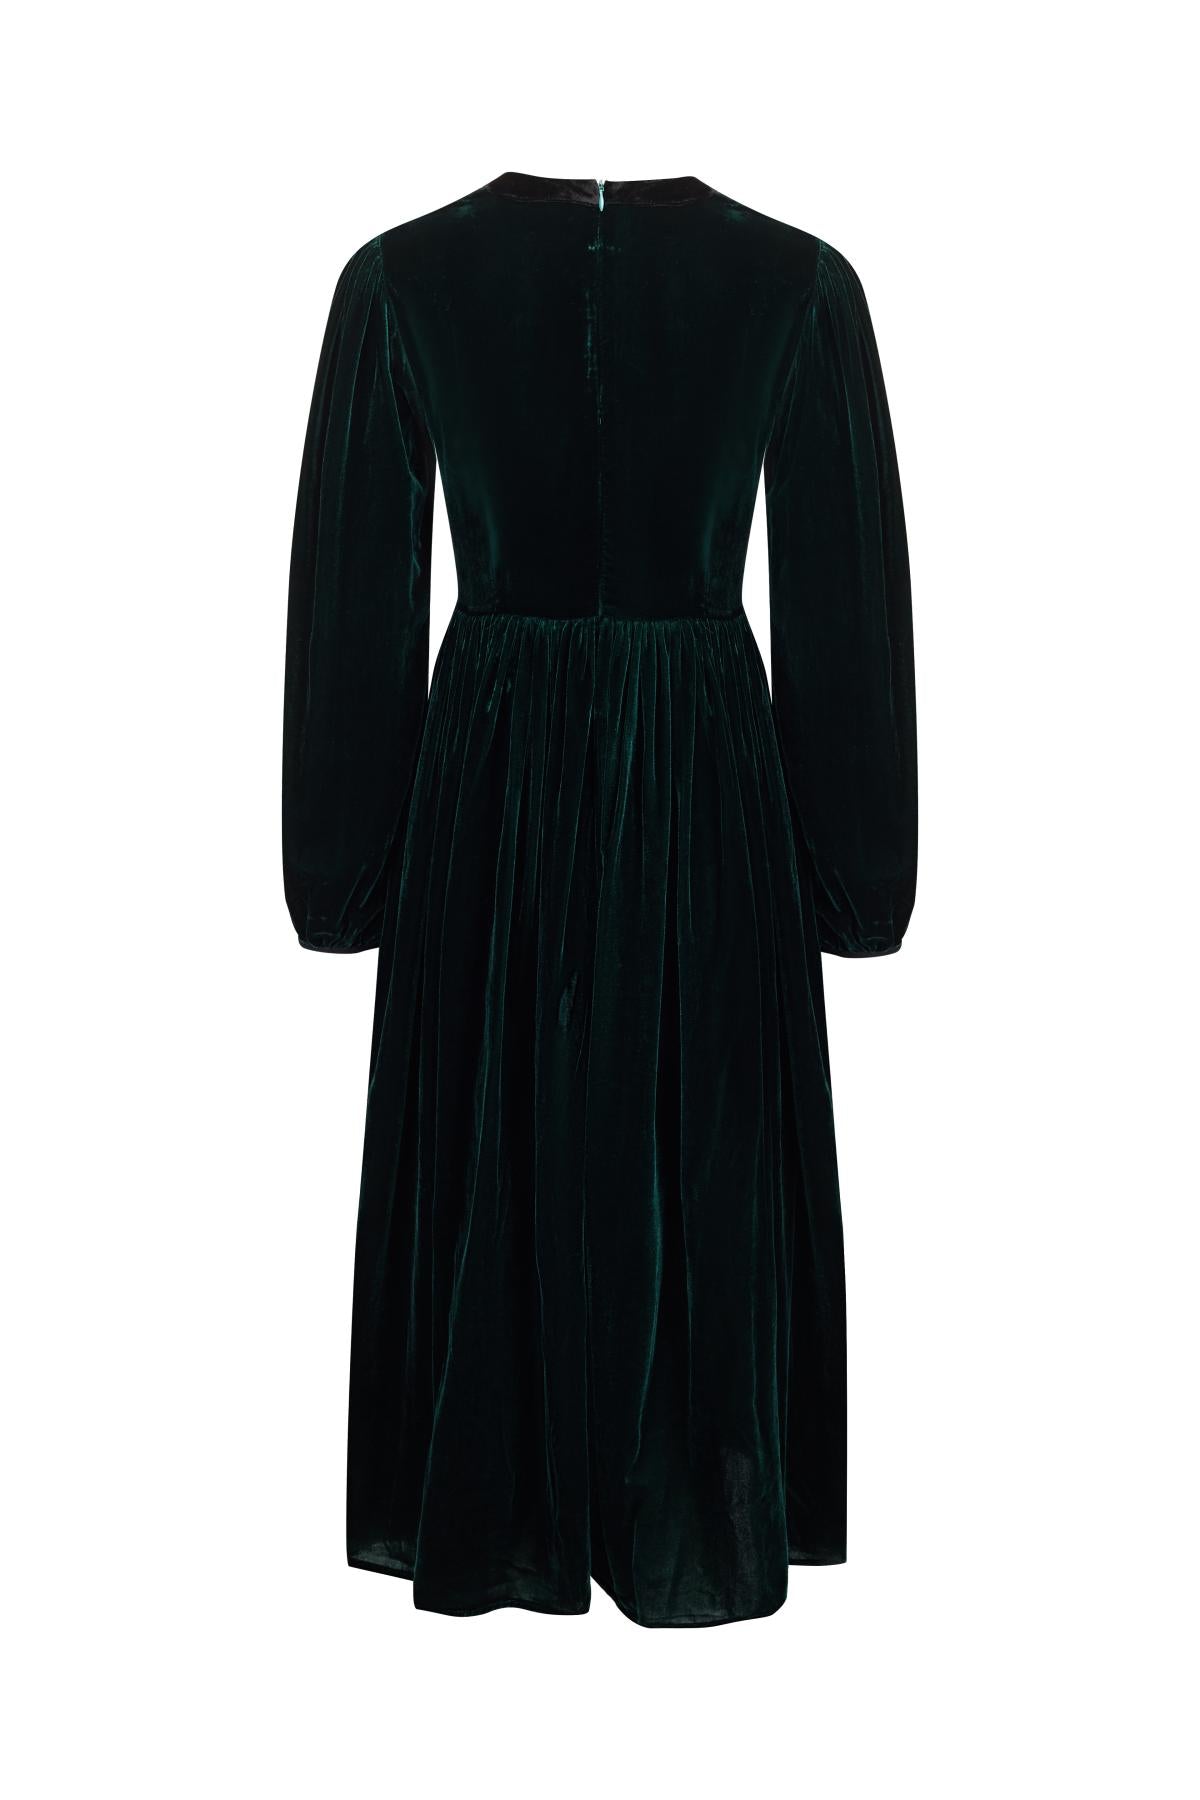 UUNIQ GATSBY Emerald Velvet Midi Dress